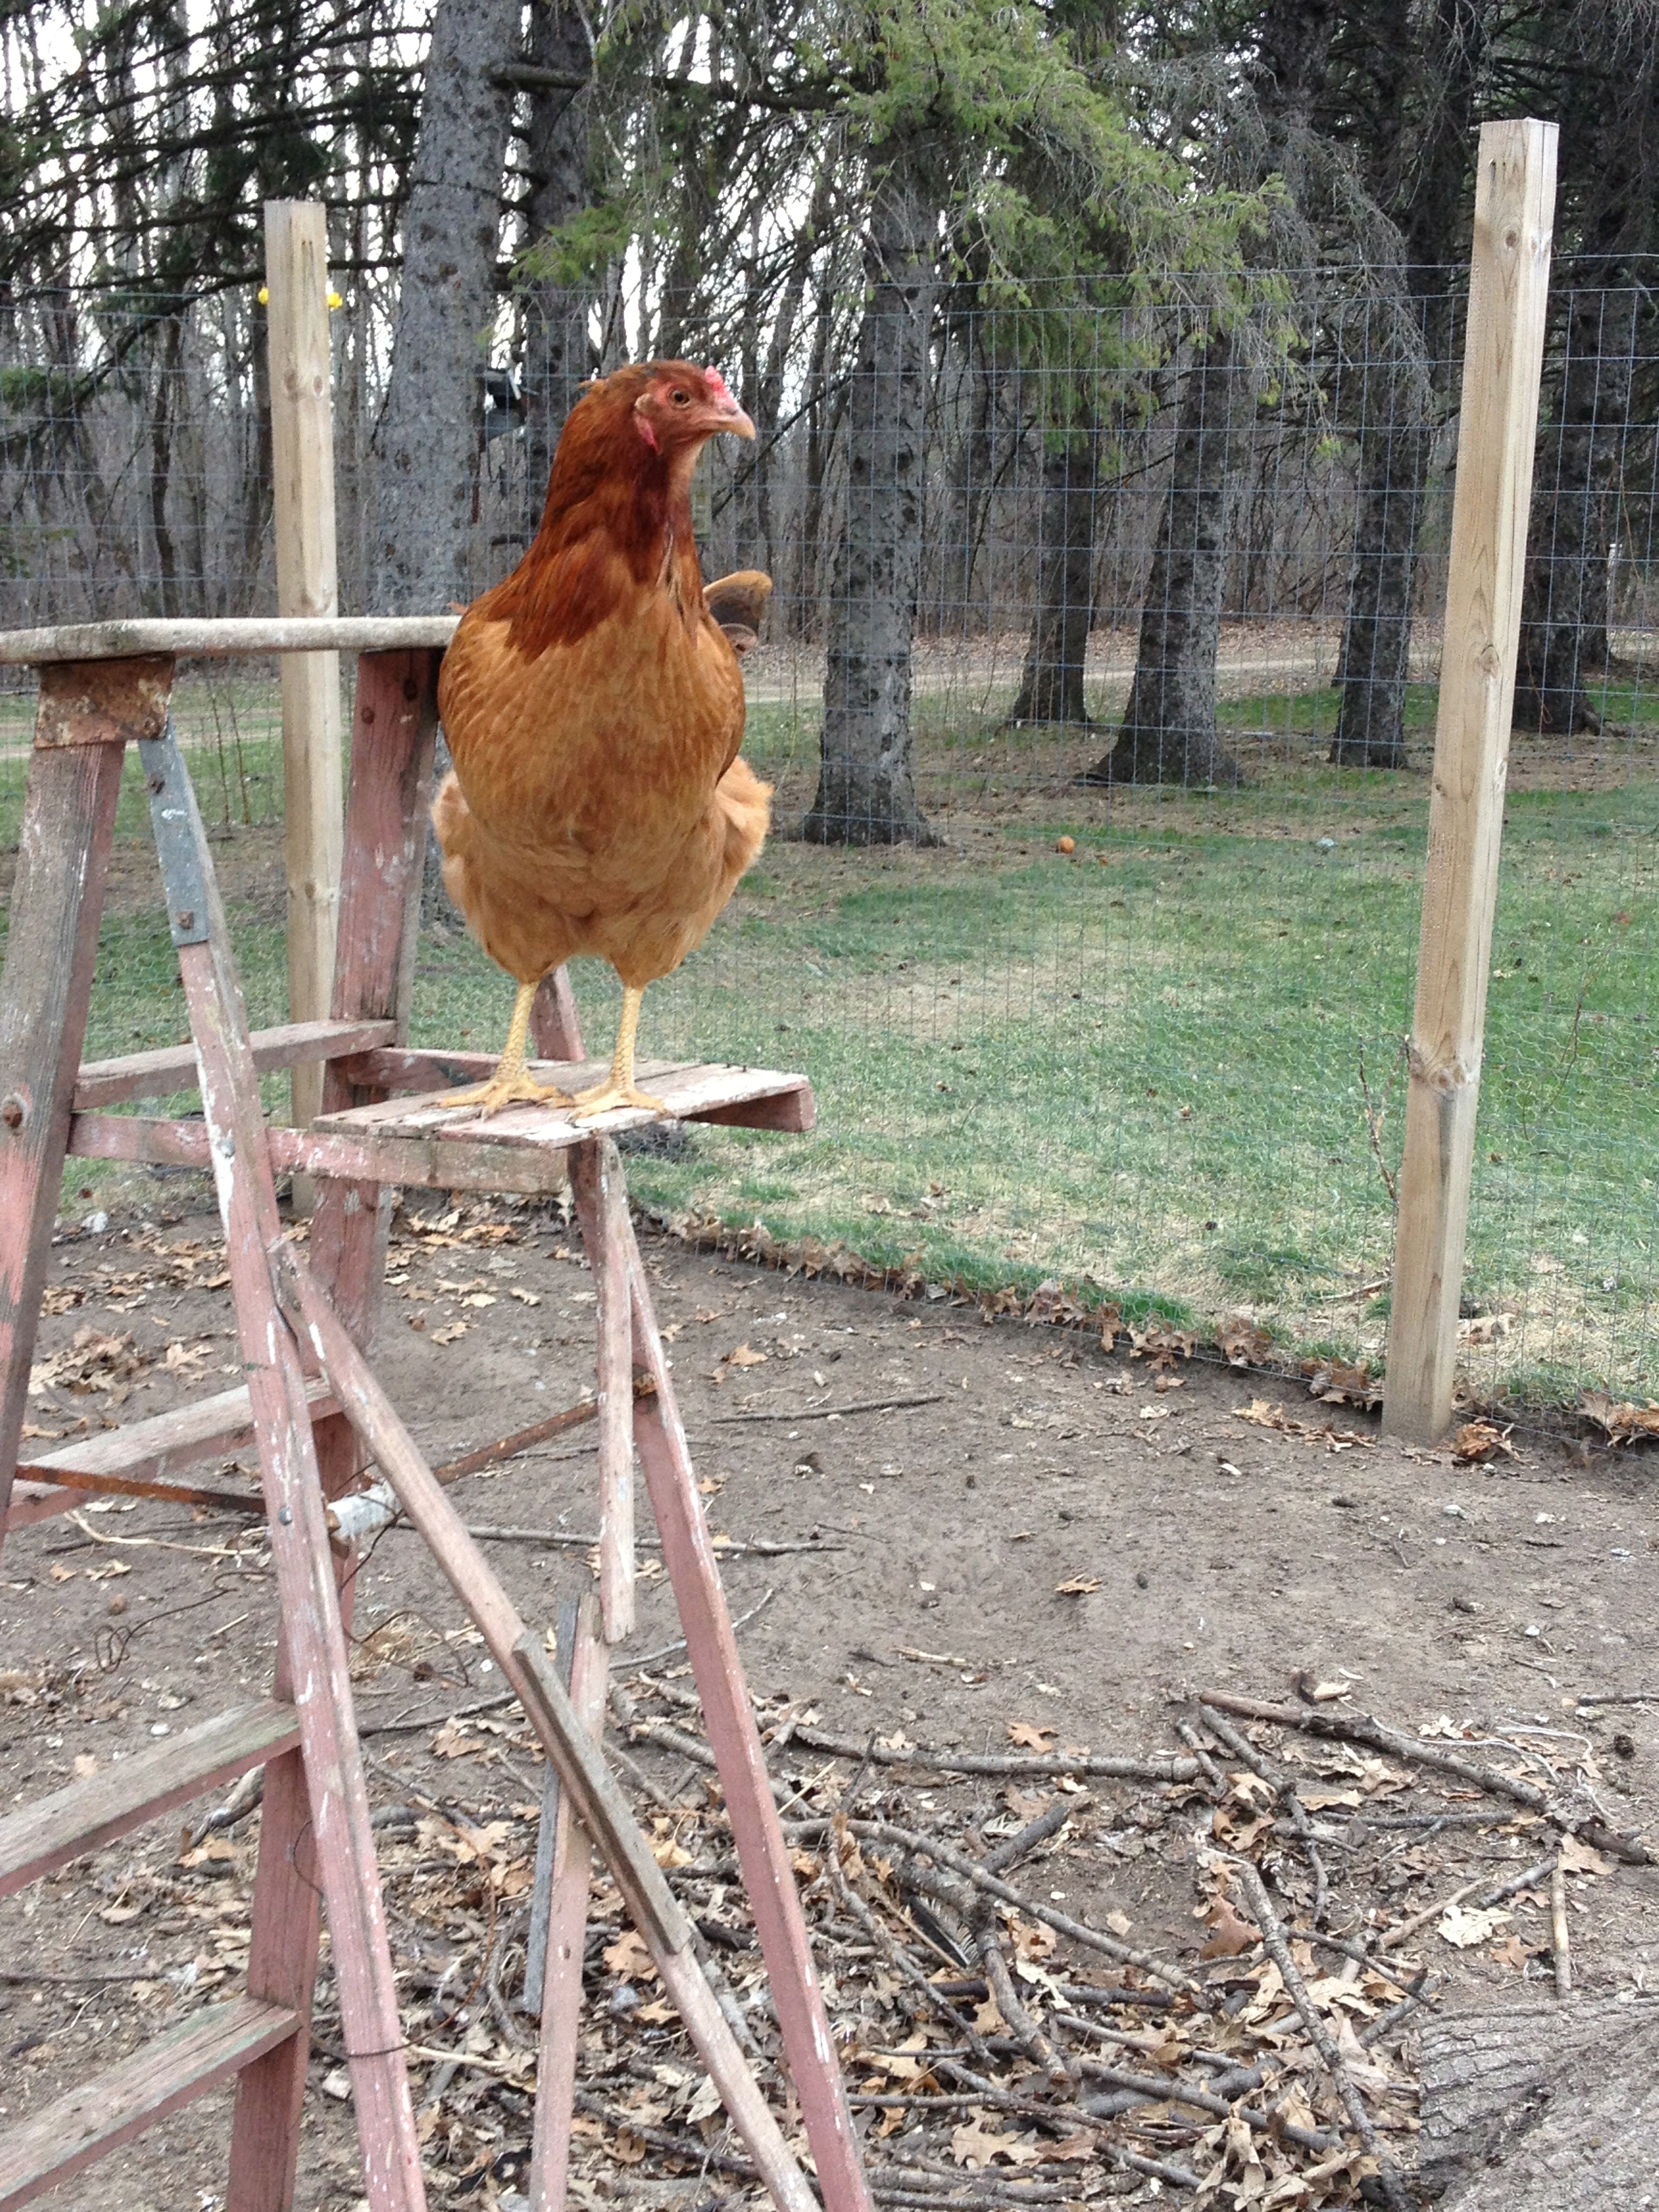 Chicken on a ladder:)